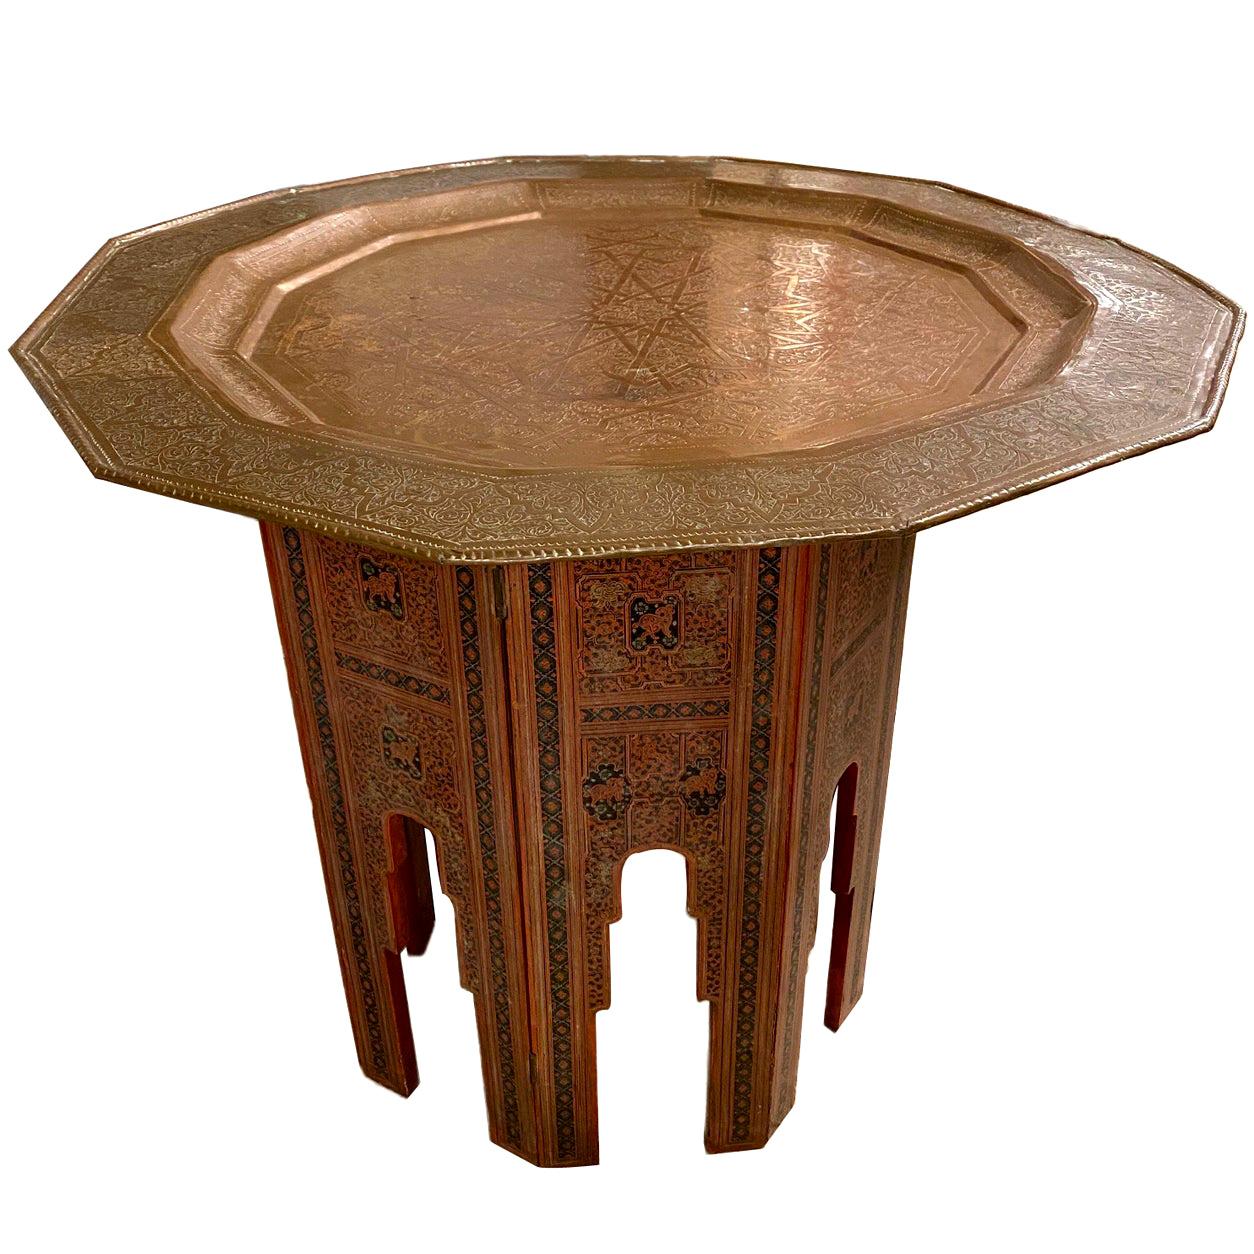 Table à plateau en bois peint marocain et métal gravé d'arabesques, datant des années 1940.

Mesures :
Hauteur : 28